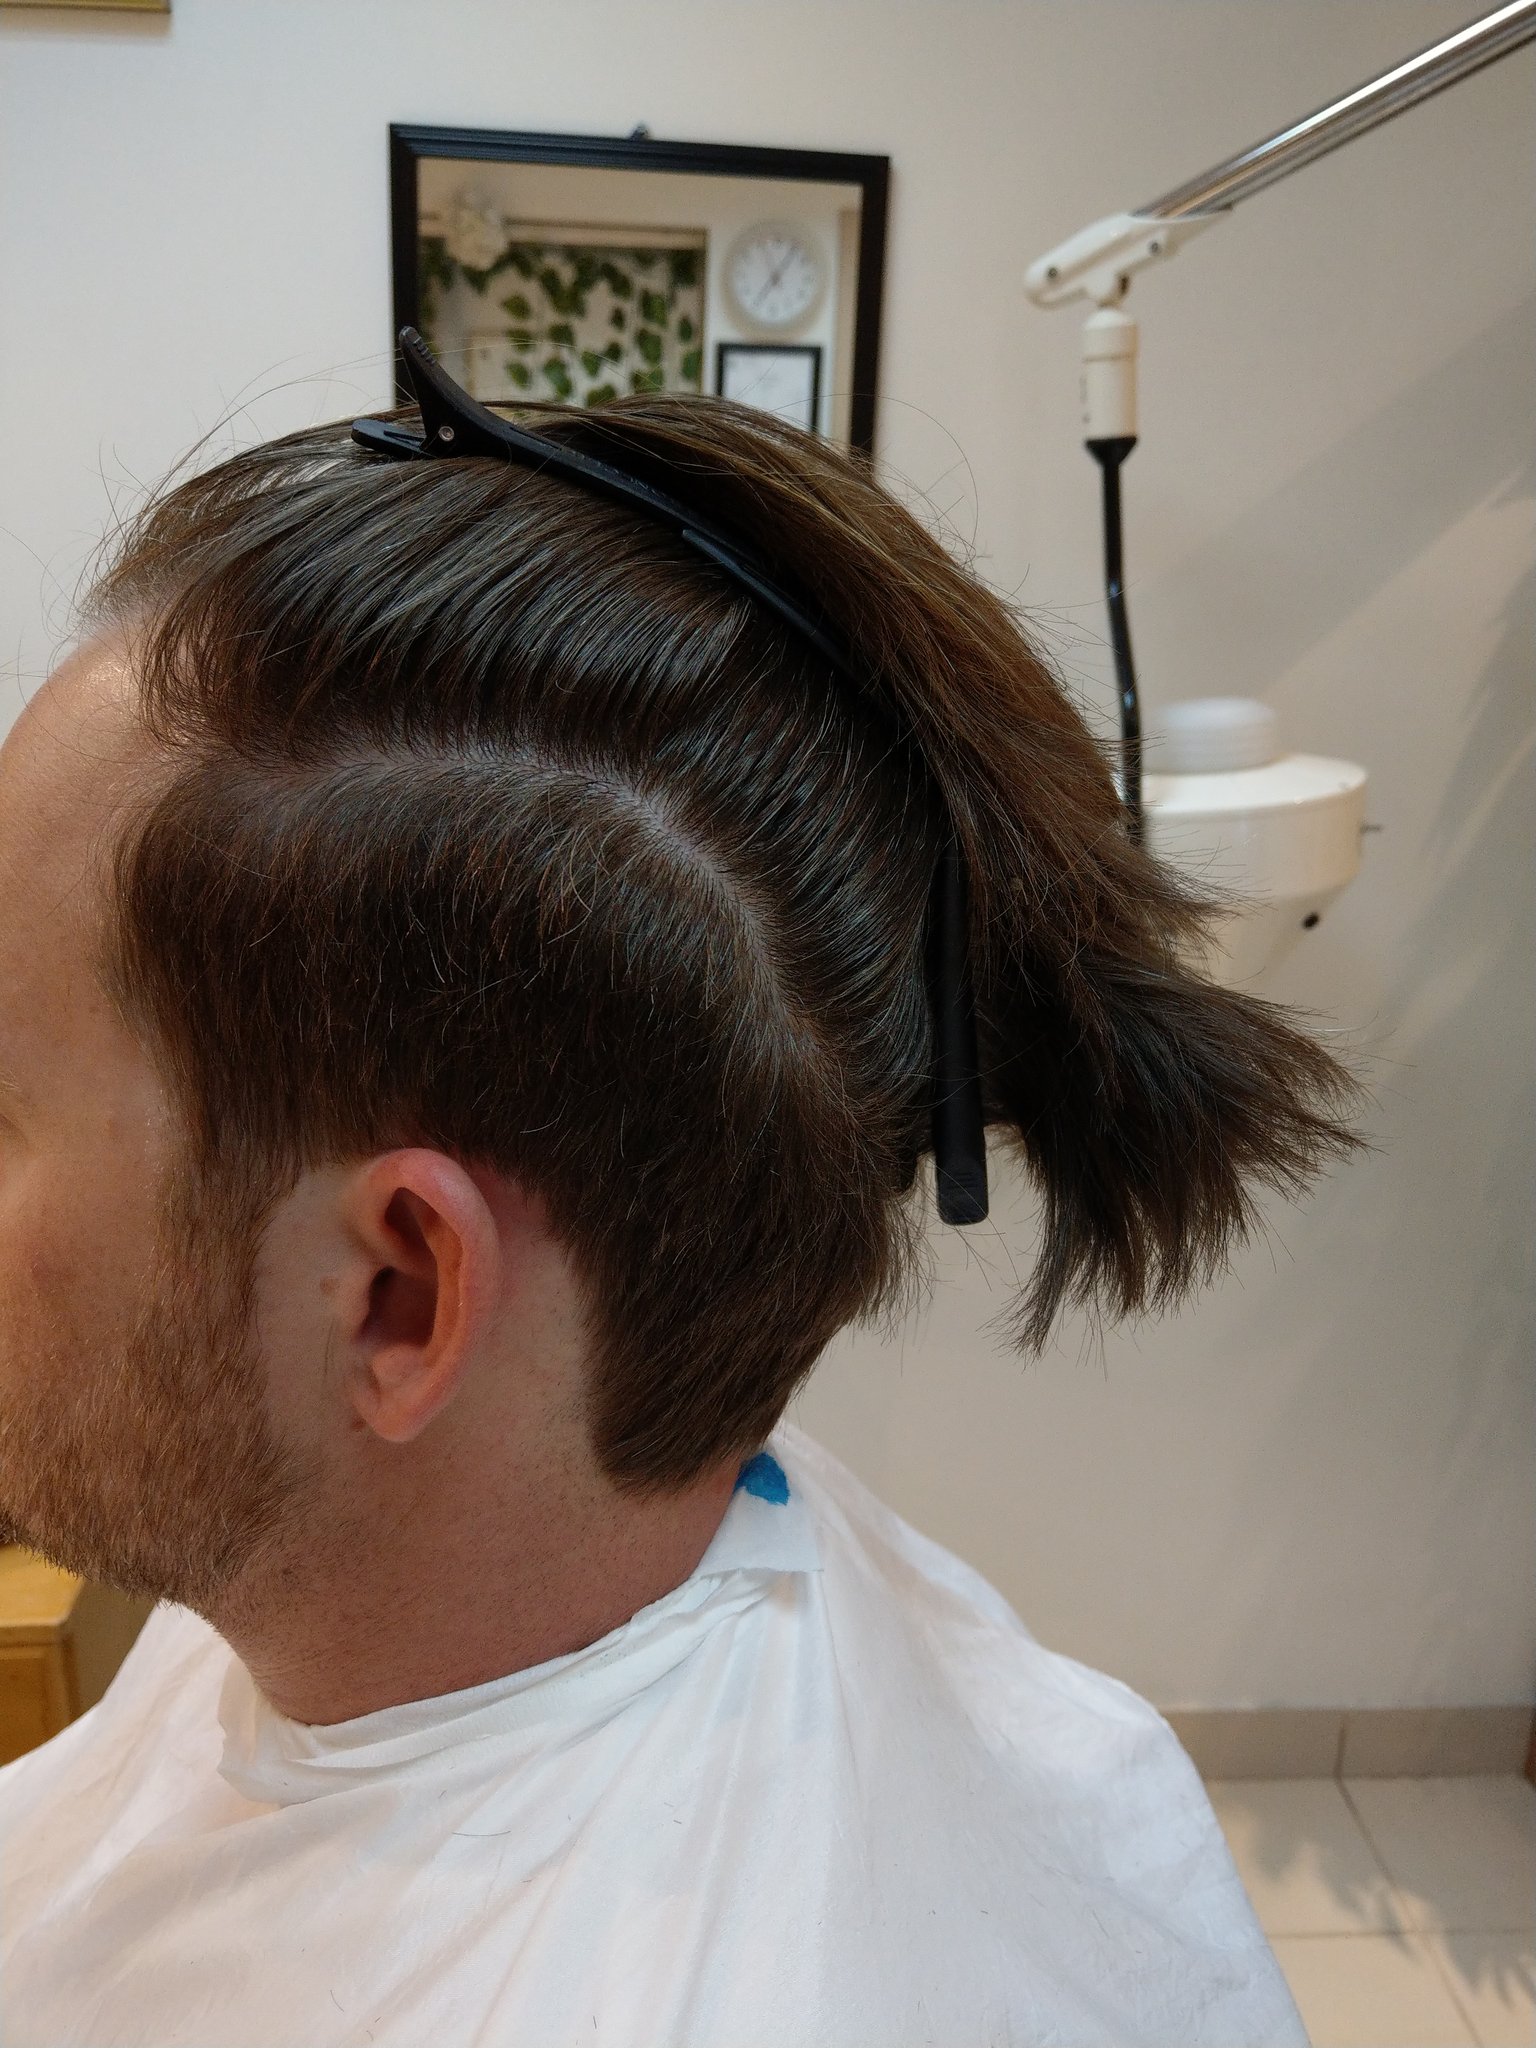 Mens Haircut Near Me ص ا ل و ن_ح ل ا ق هوليدي on X: "💈Barber shop ✂ barbers near me best hair  salon for men best hair color salon near me coiffeur cuthair best hair